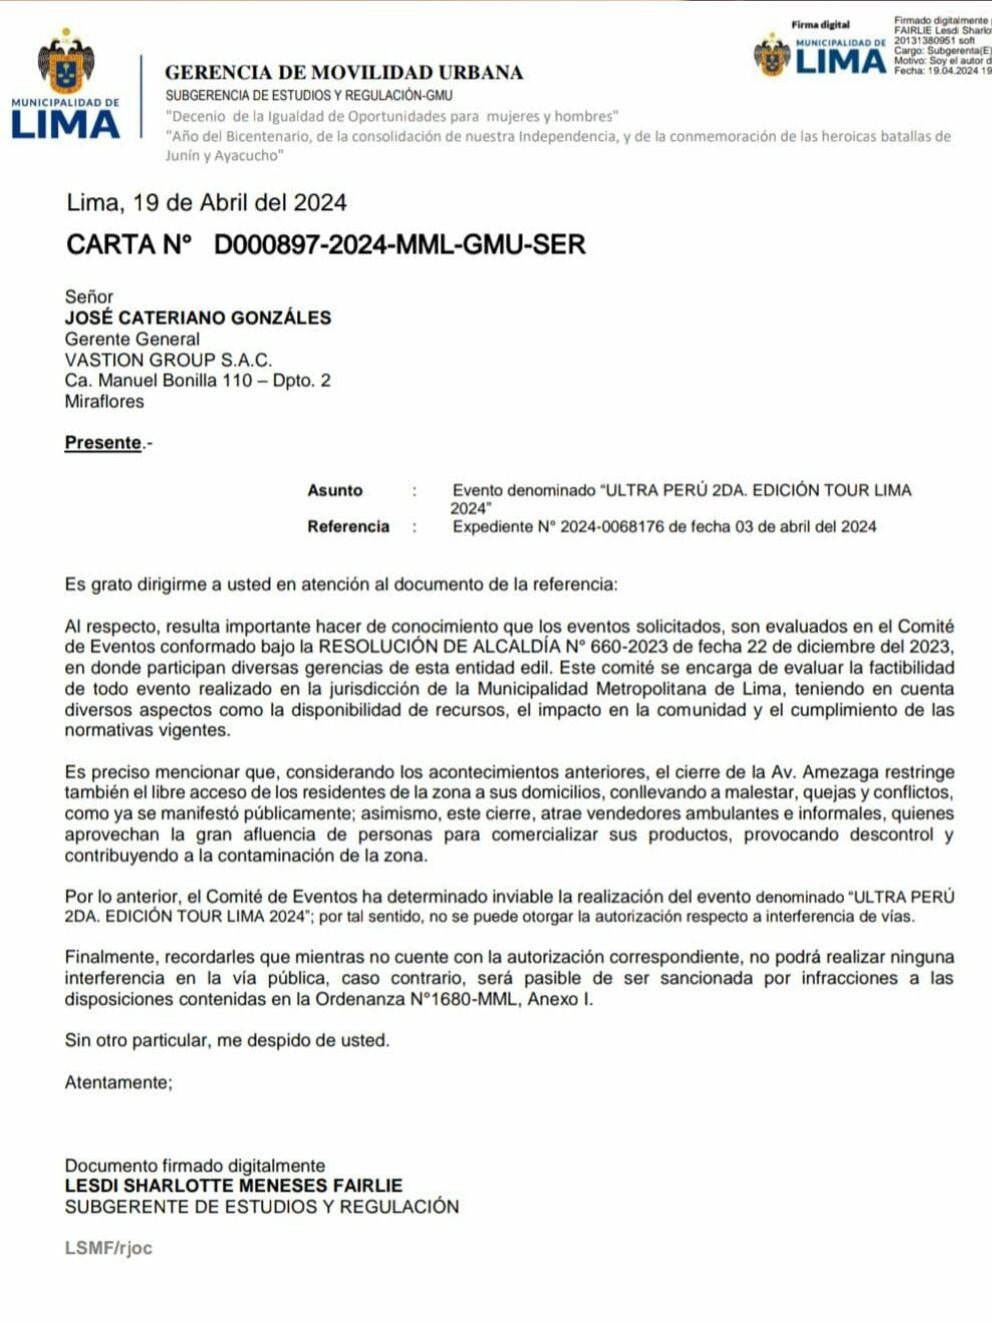 Comunicado de la Municipalidad de Lima a Vastion Gruop, empresa organizadora del Ultra Perú 2024, donde le detalla los motivos del cierre. Twitter.